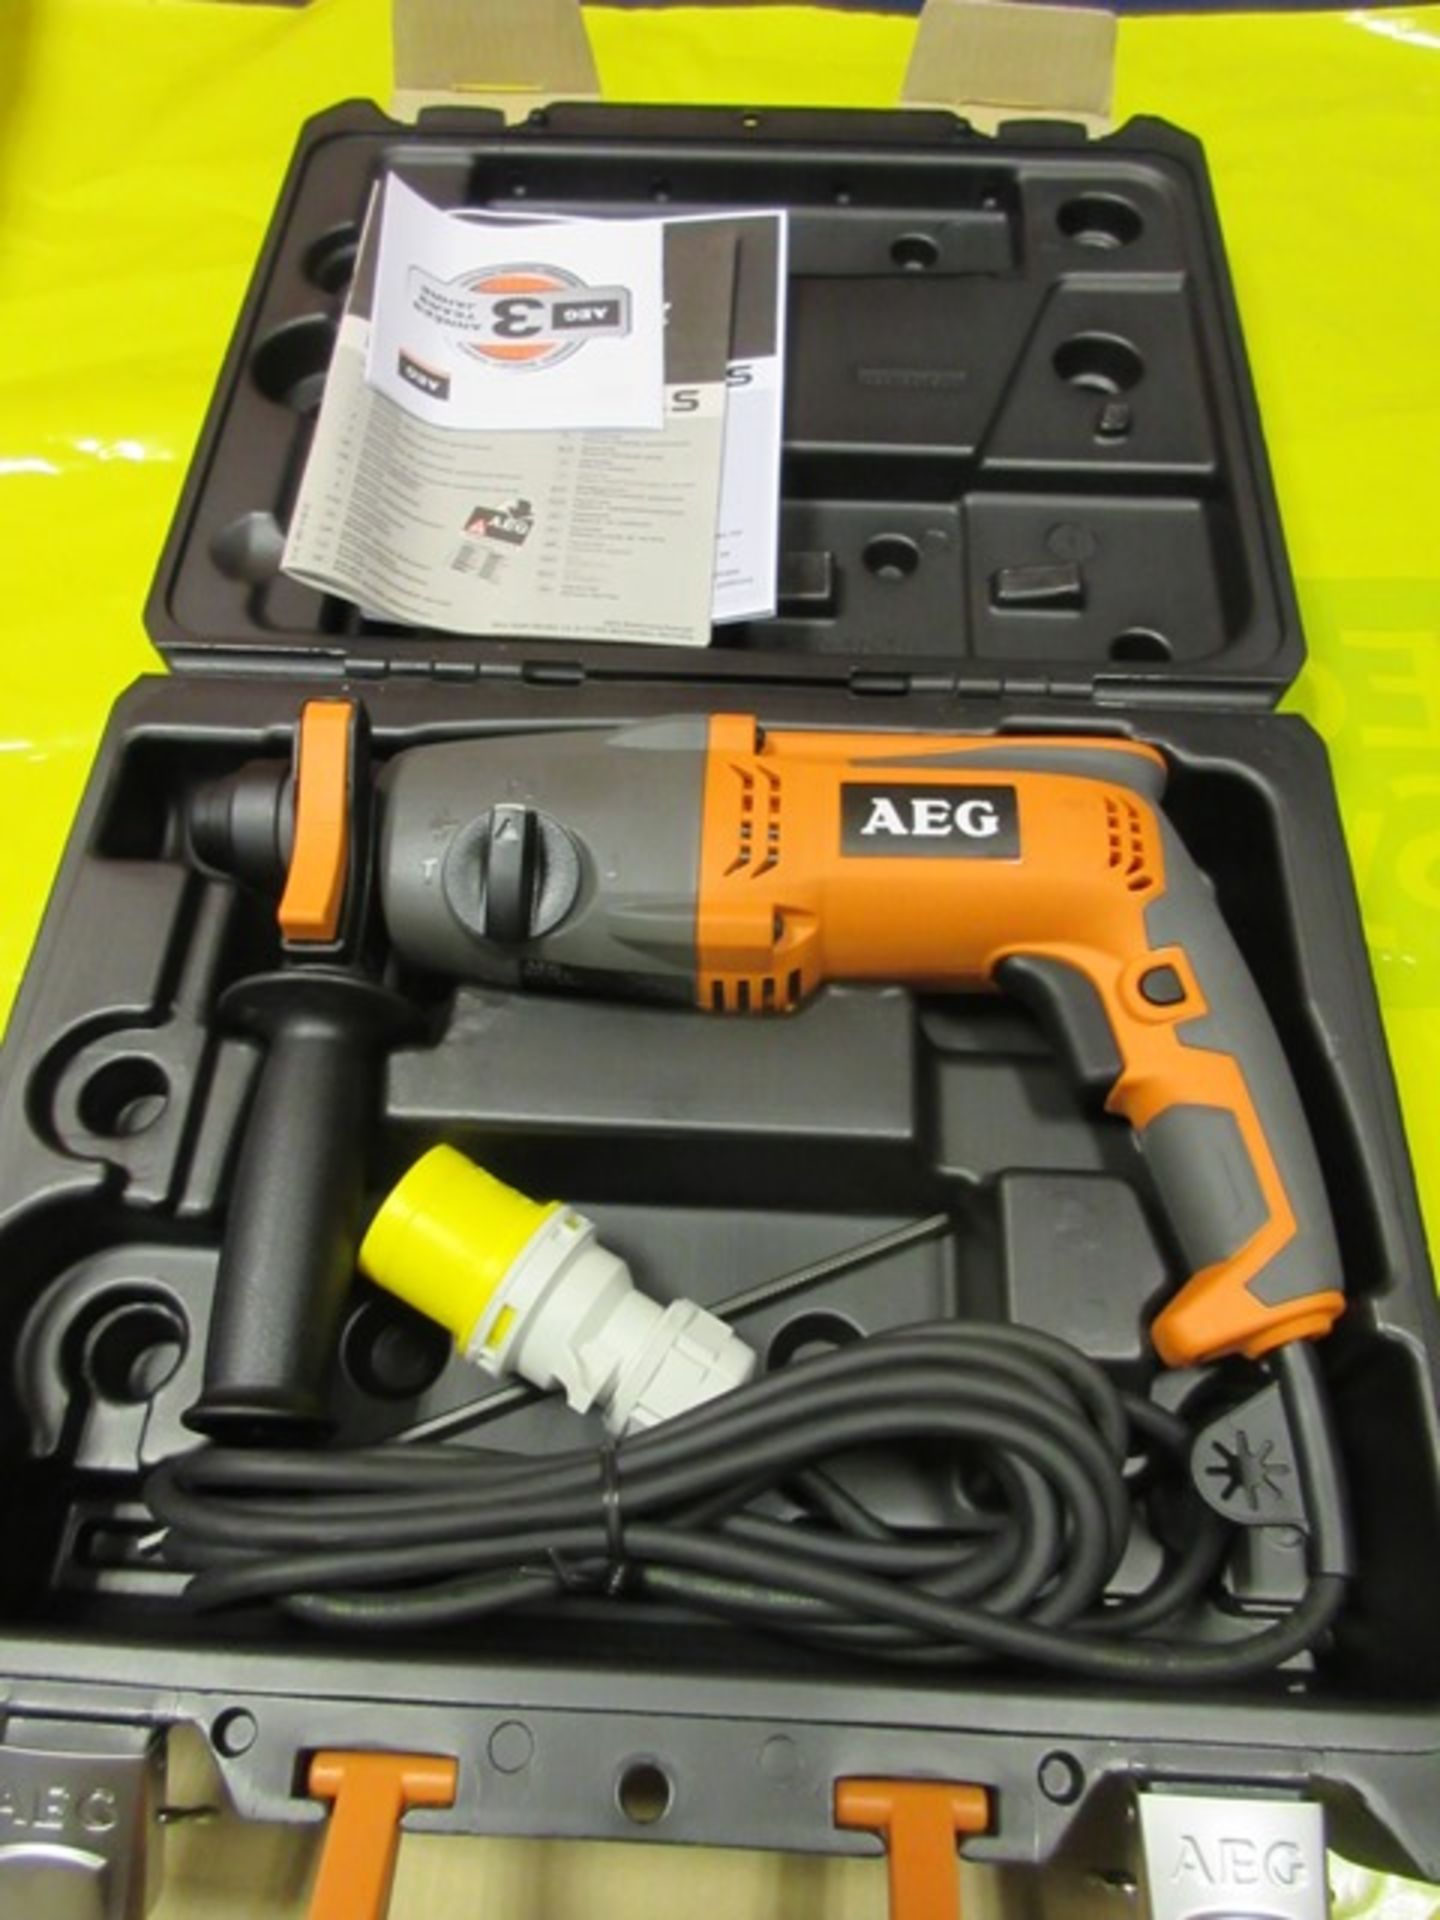 AEG KH24E hammer drill 110v, 720w - Image 2 of 2